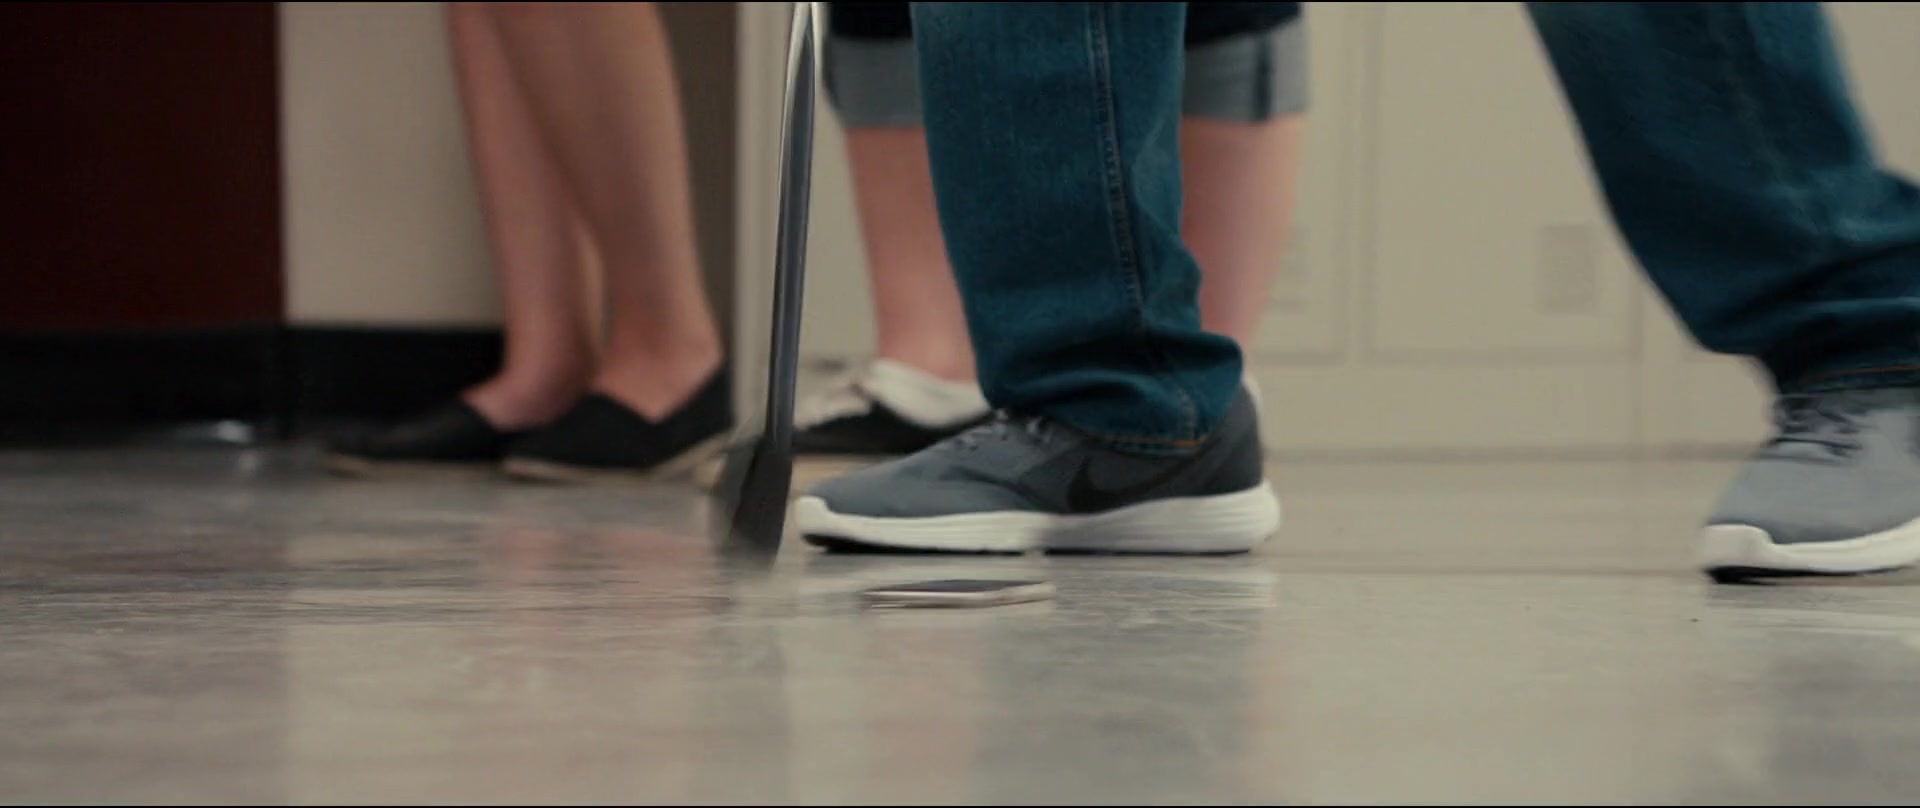 Nike Men's Grey Sneakers in Status Update (2018) Movie1920 x 808